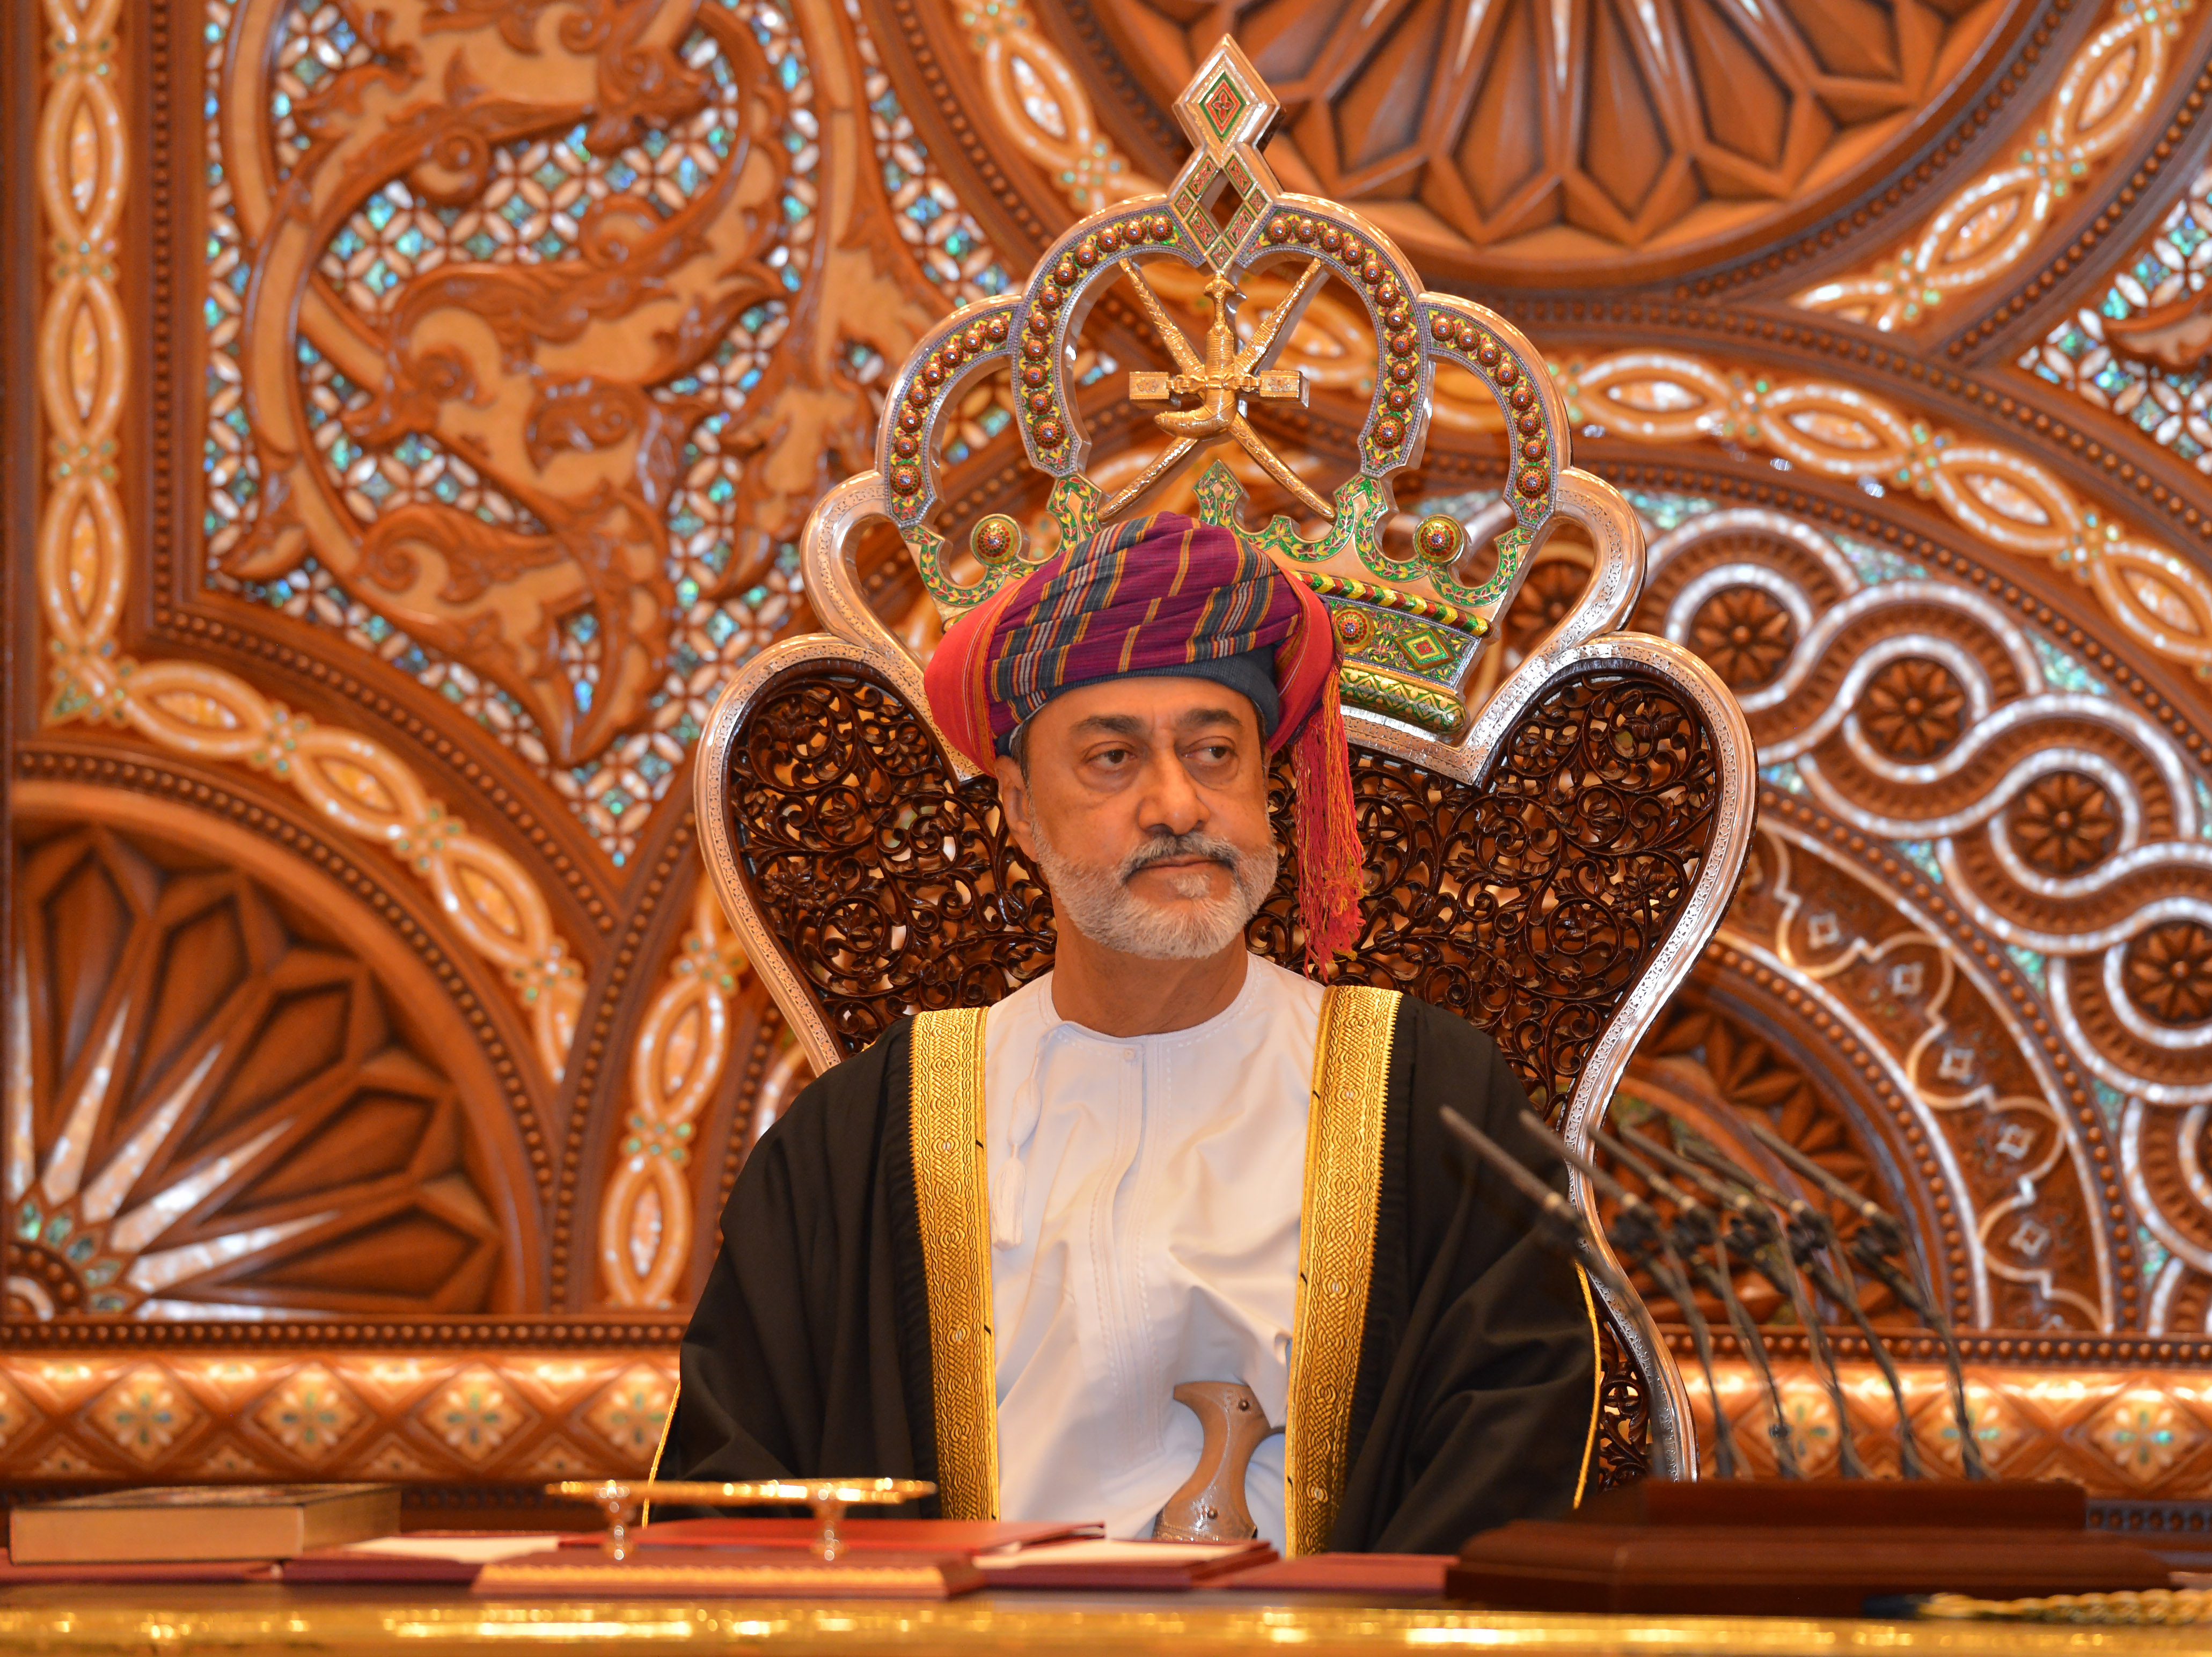 جلالة السلطان يهنئ رئيس جمهورية موريشيوس